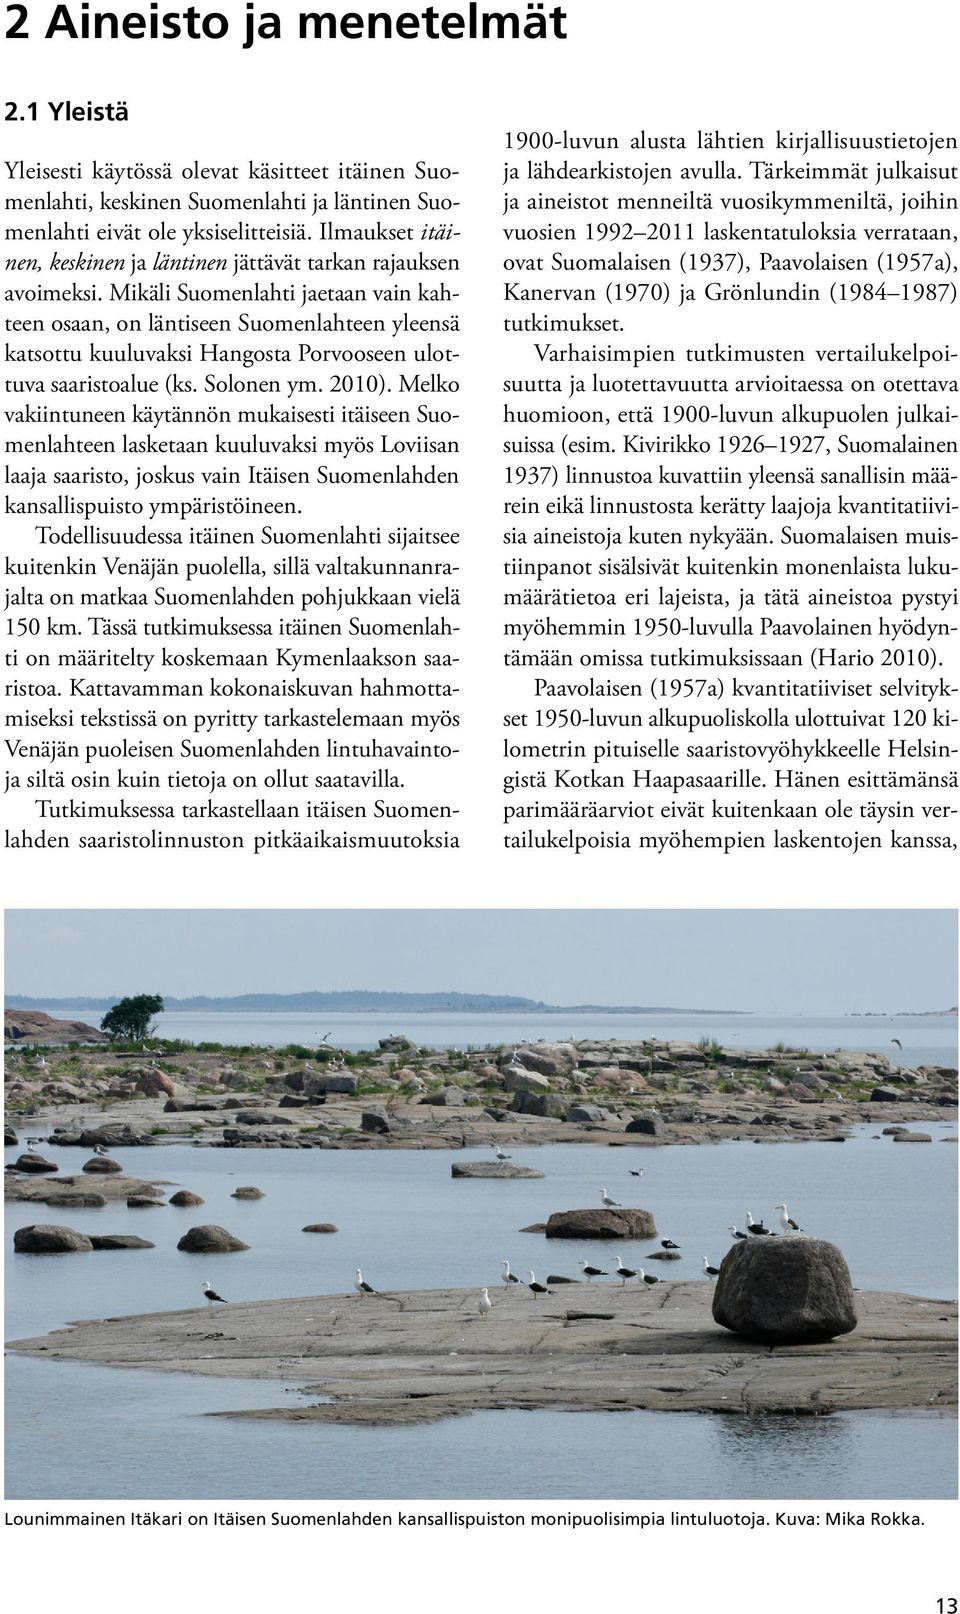 Mikäli Suomenlahti jaetaan vain kahteen osaan, on läntiseen Suomenlahteen yleensä katsottu kuuluvaksi Hangosta Porvooseen ulottuva saaristoalue (ks. Solonen ym. 2010).